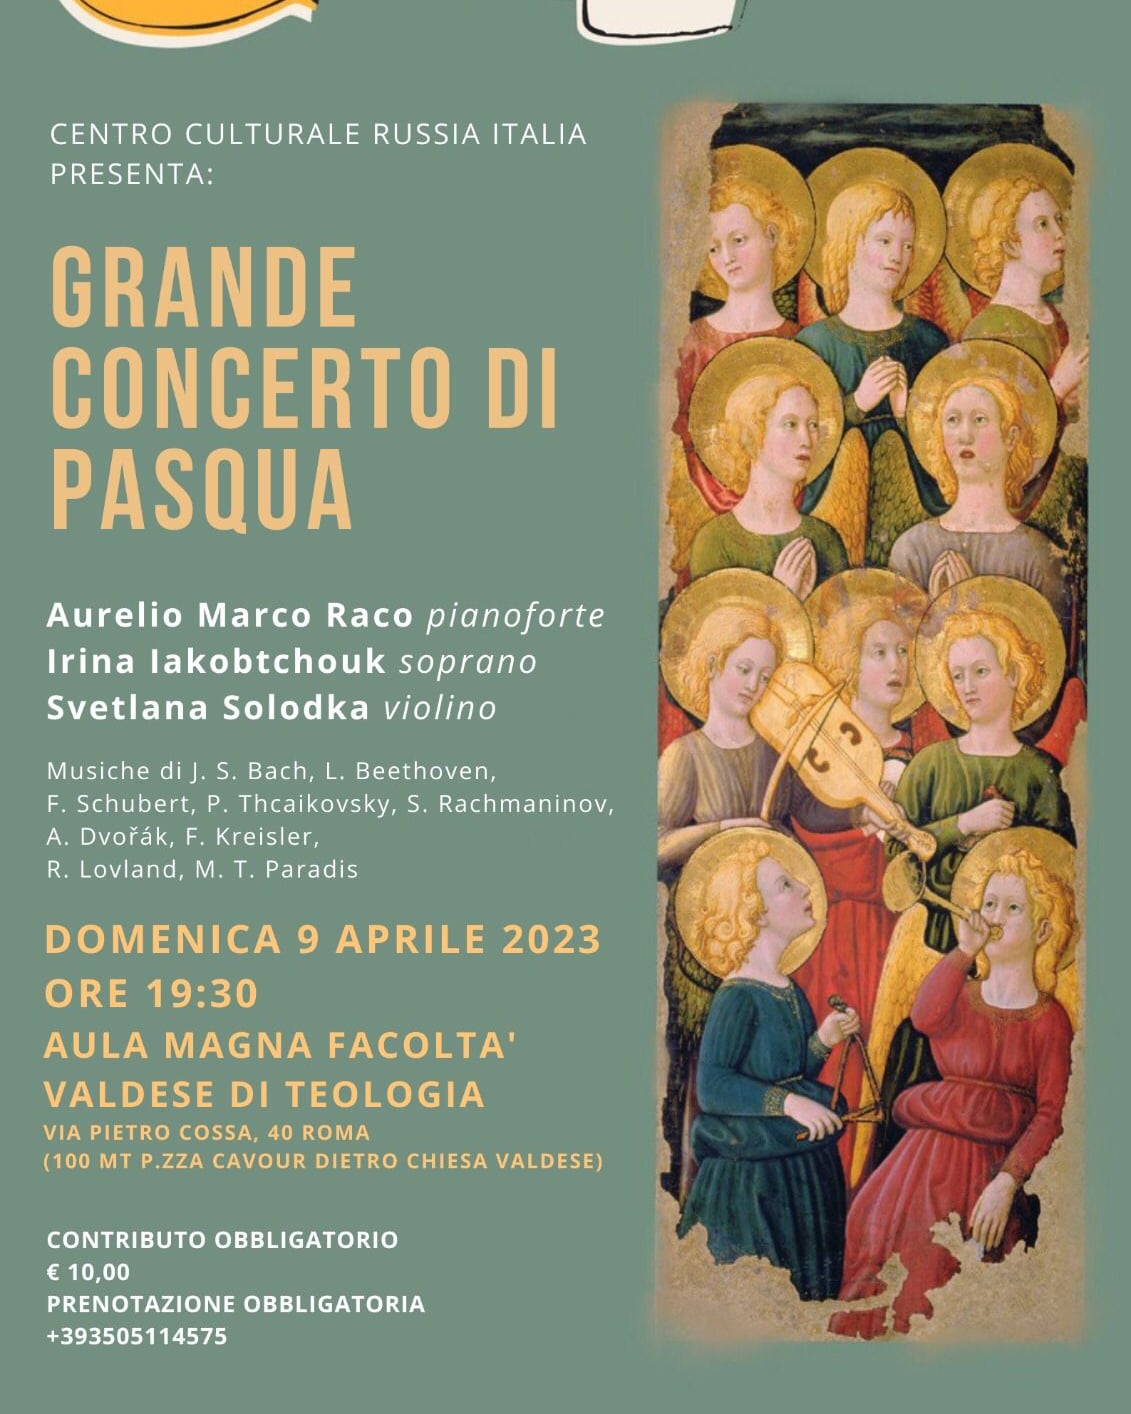 Concerto per la Pasqua, il 9 aprile all'aula magna facoltà valdese di teologia